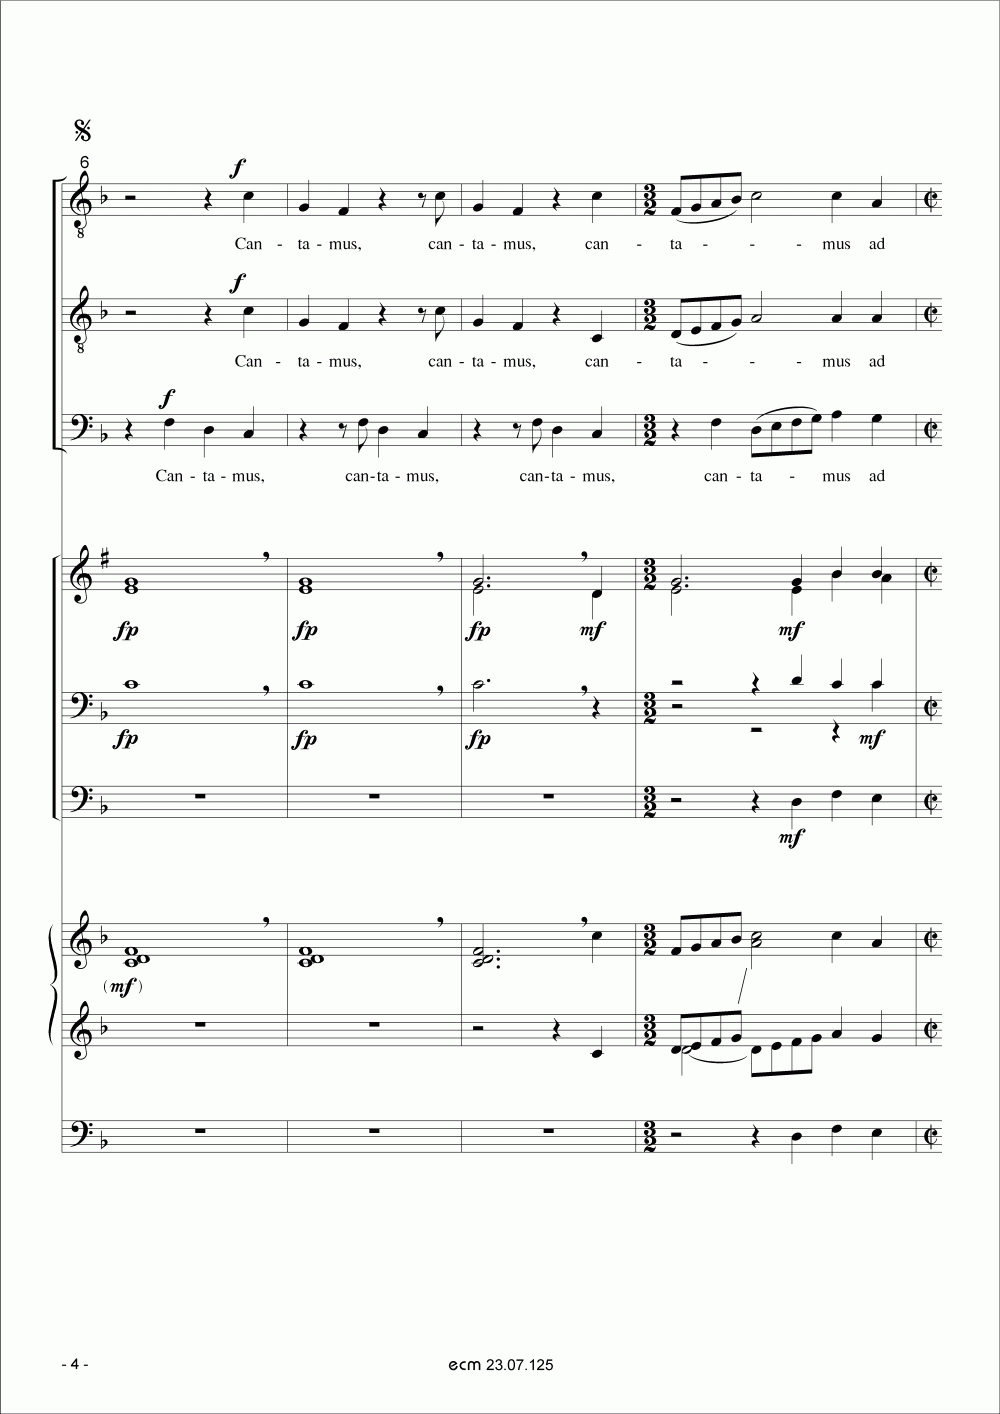 Cantamus ad gloriam musicae (Wind ensemble)